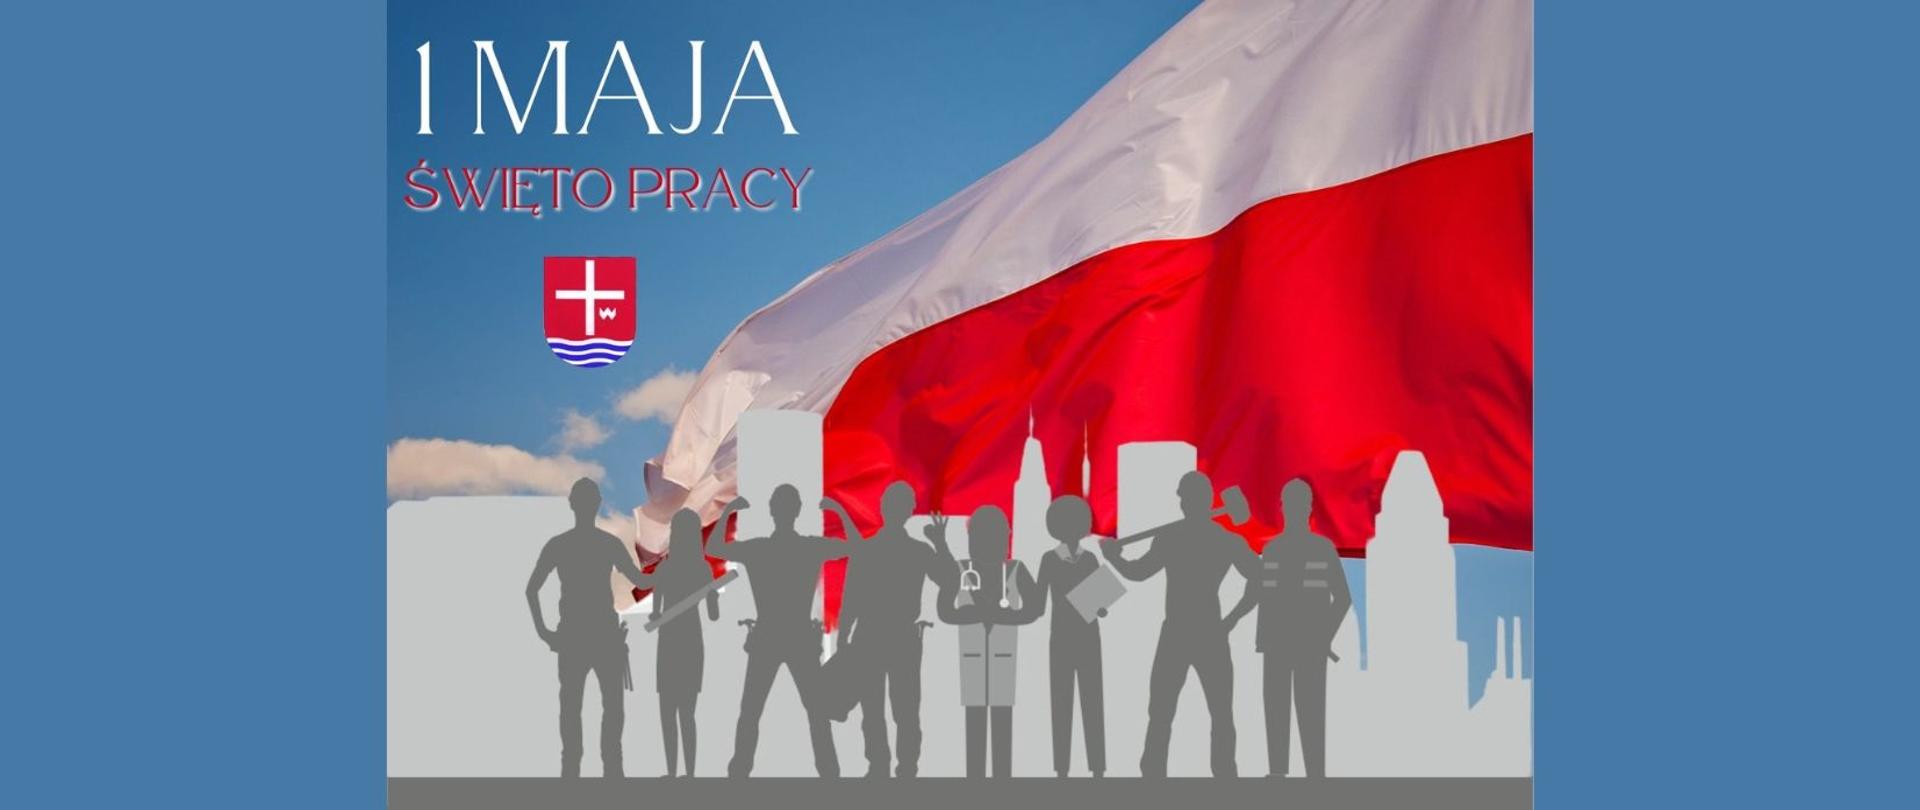 Napis - 1 maja - Święto pracy z herbem powiatu na grafice przedstawiającej flagę Polski oraz cienie sylwetek ludzi pracy.